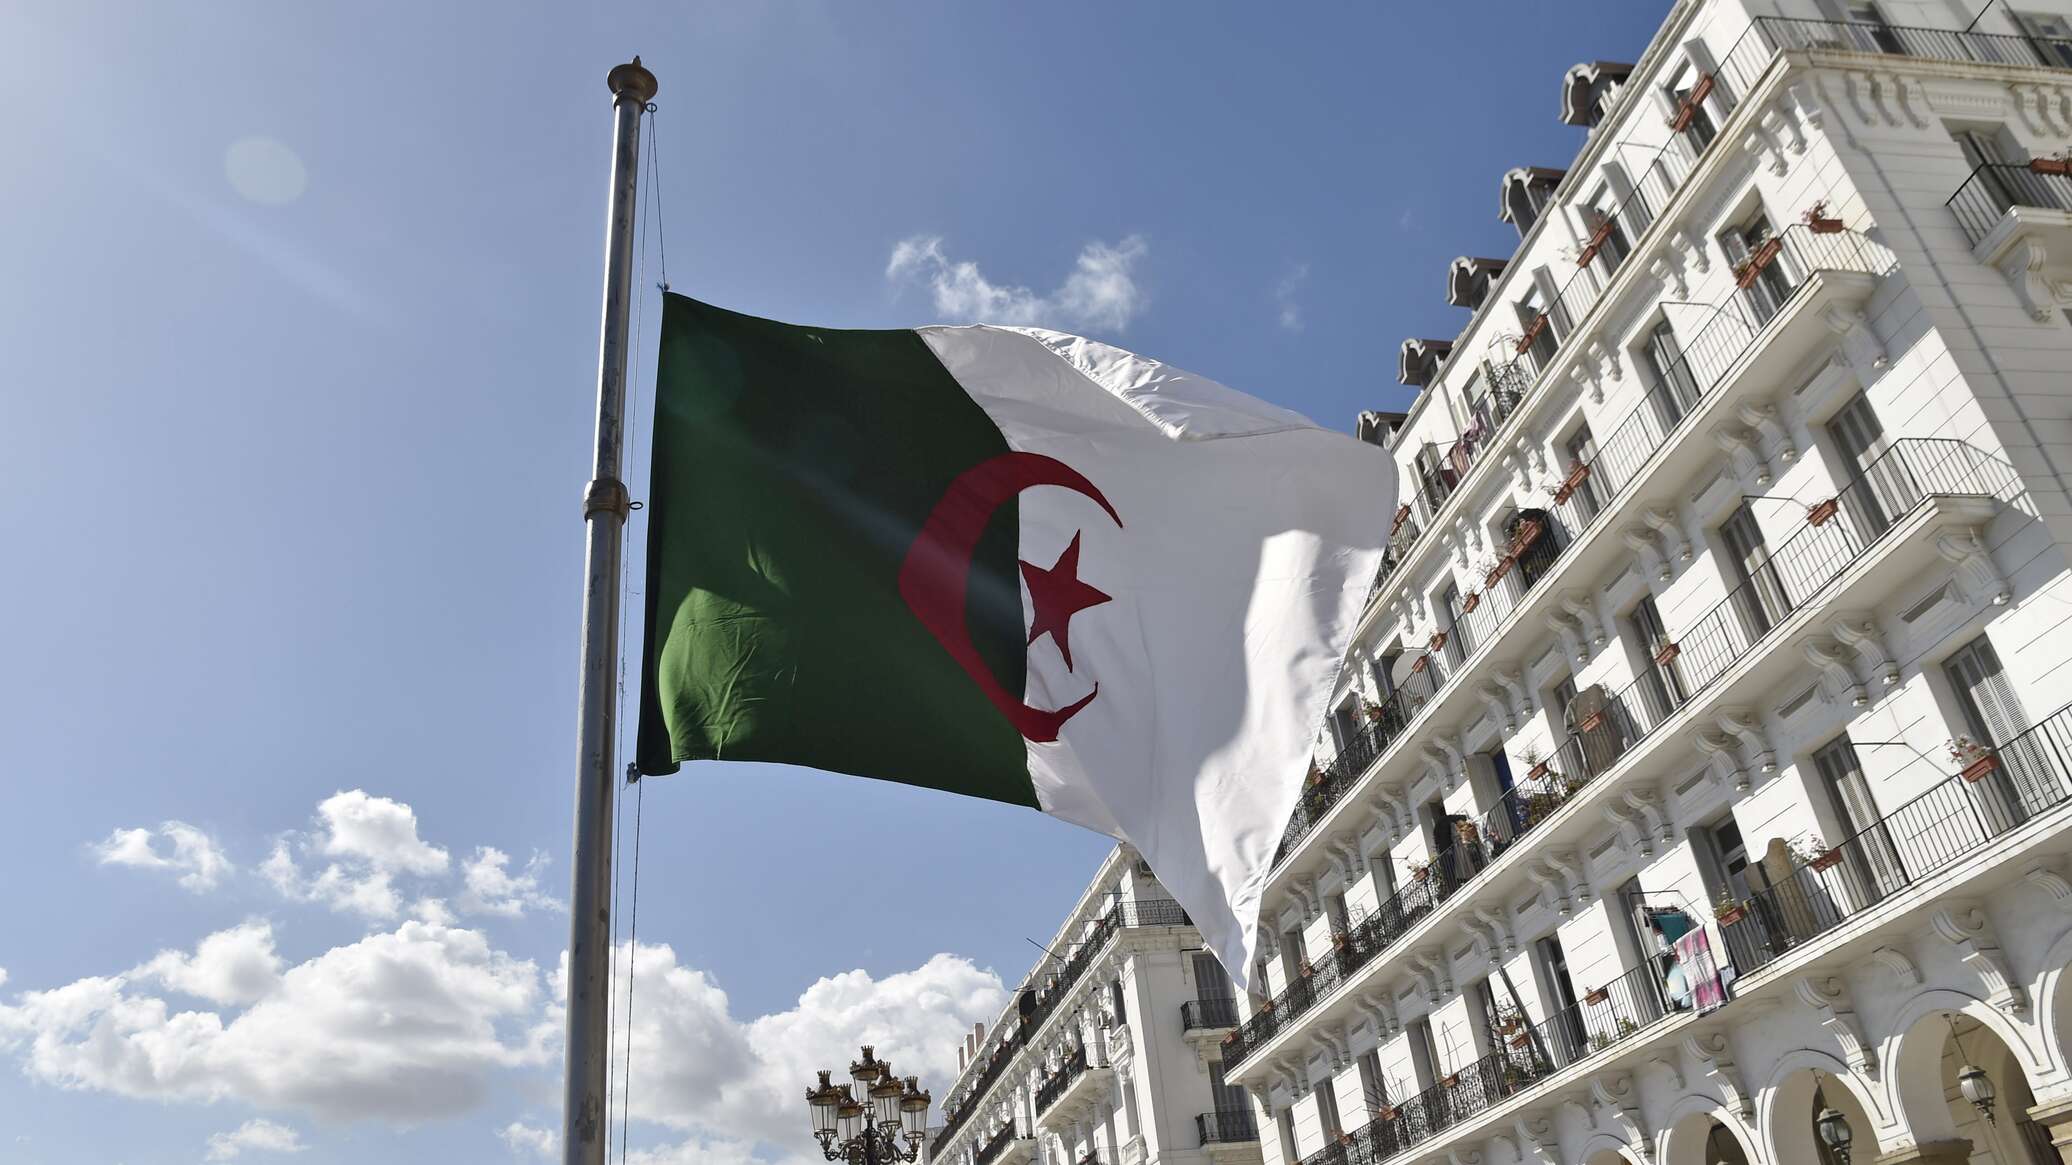 الجزائر تأسف لما ورد في بيان أمريكي عن الحرية الدينية من "معلومات مغلوطة وغير دقيقة"